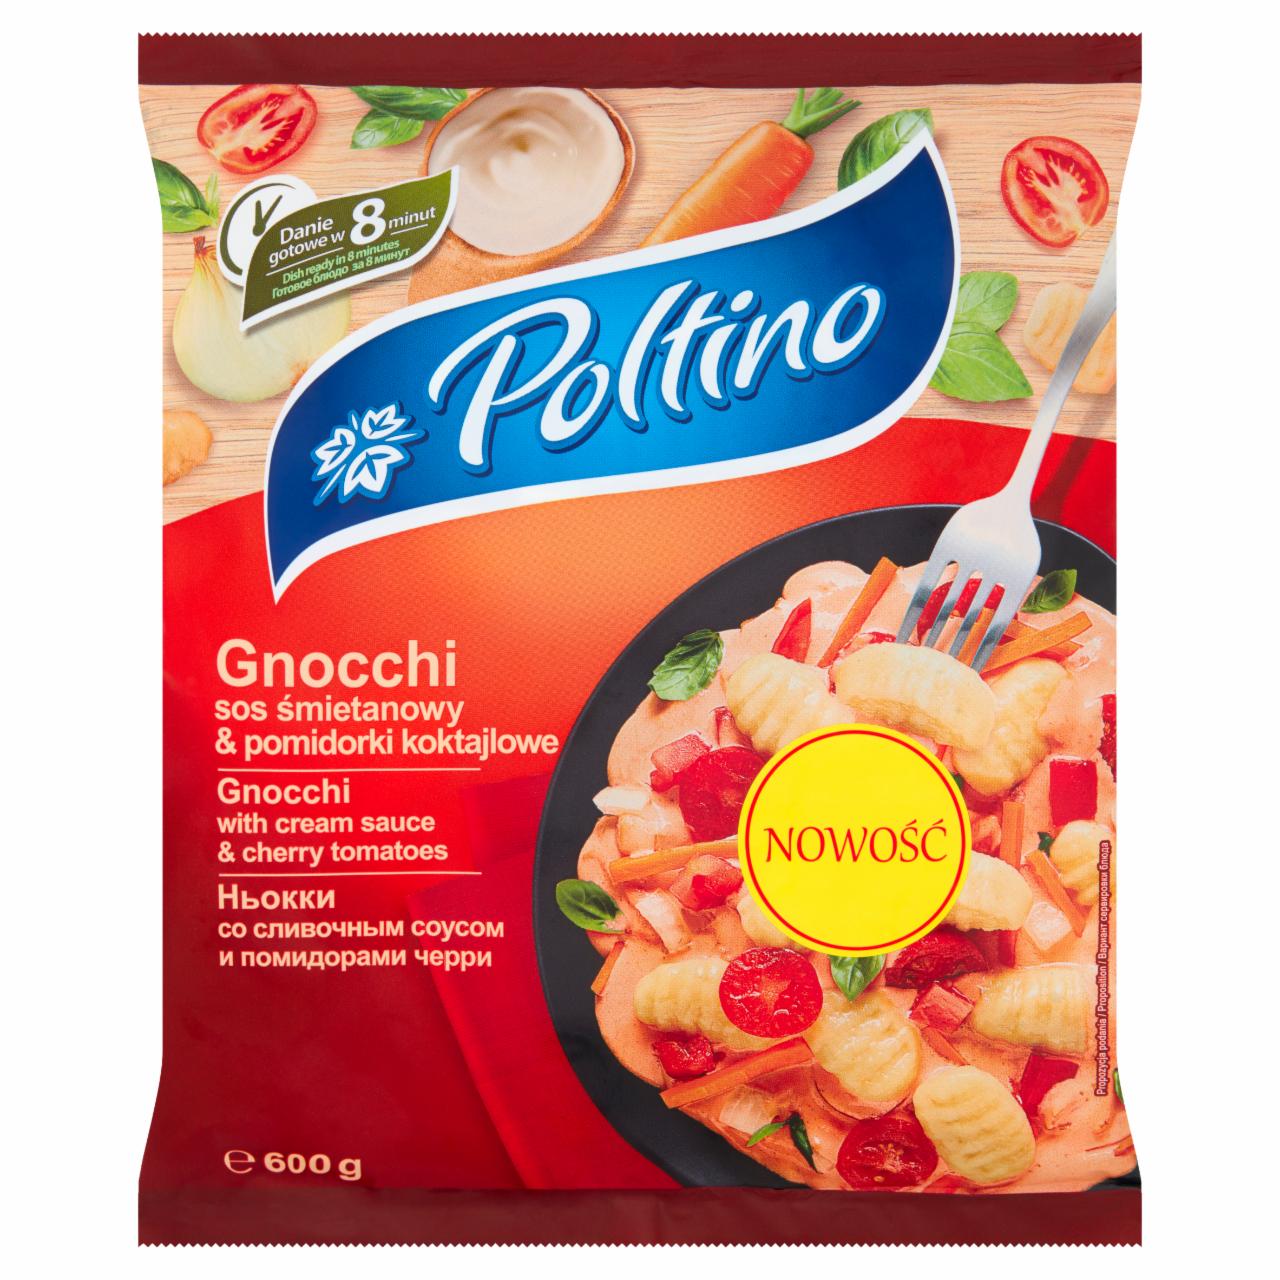 Zdjęcia - Poltino Gnocchi sos śmietanowy & pomidorki koktajlowe 600 g